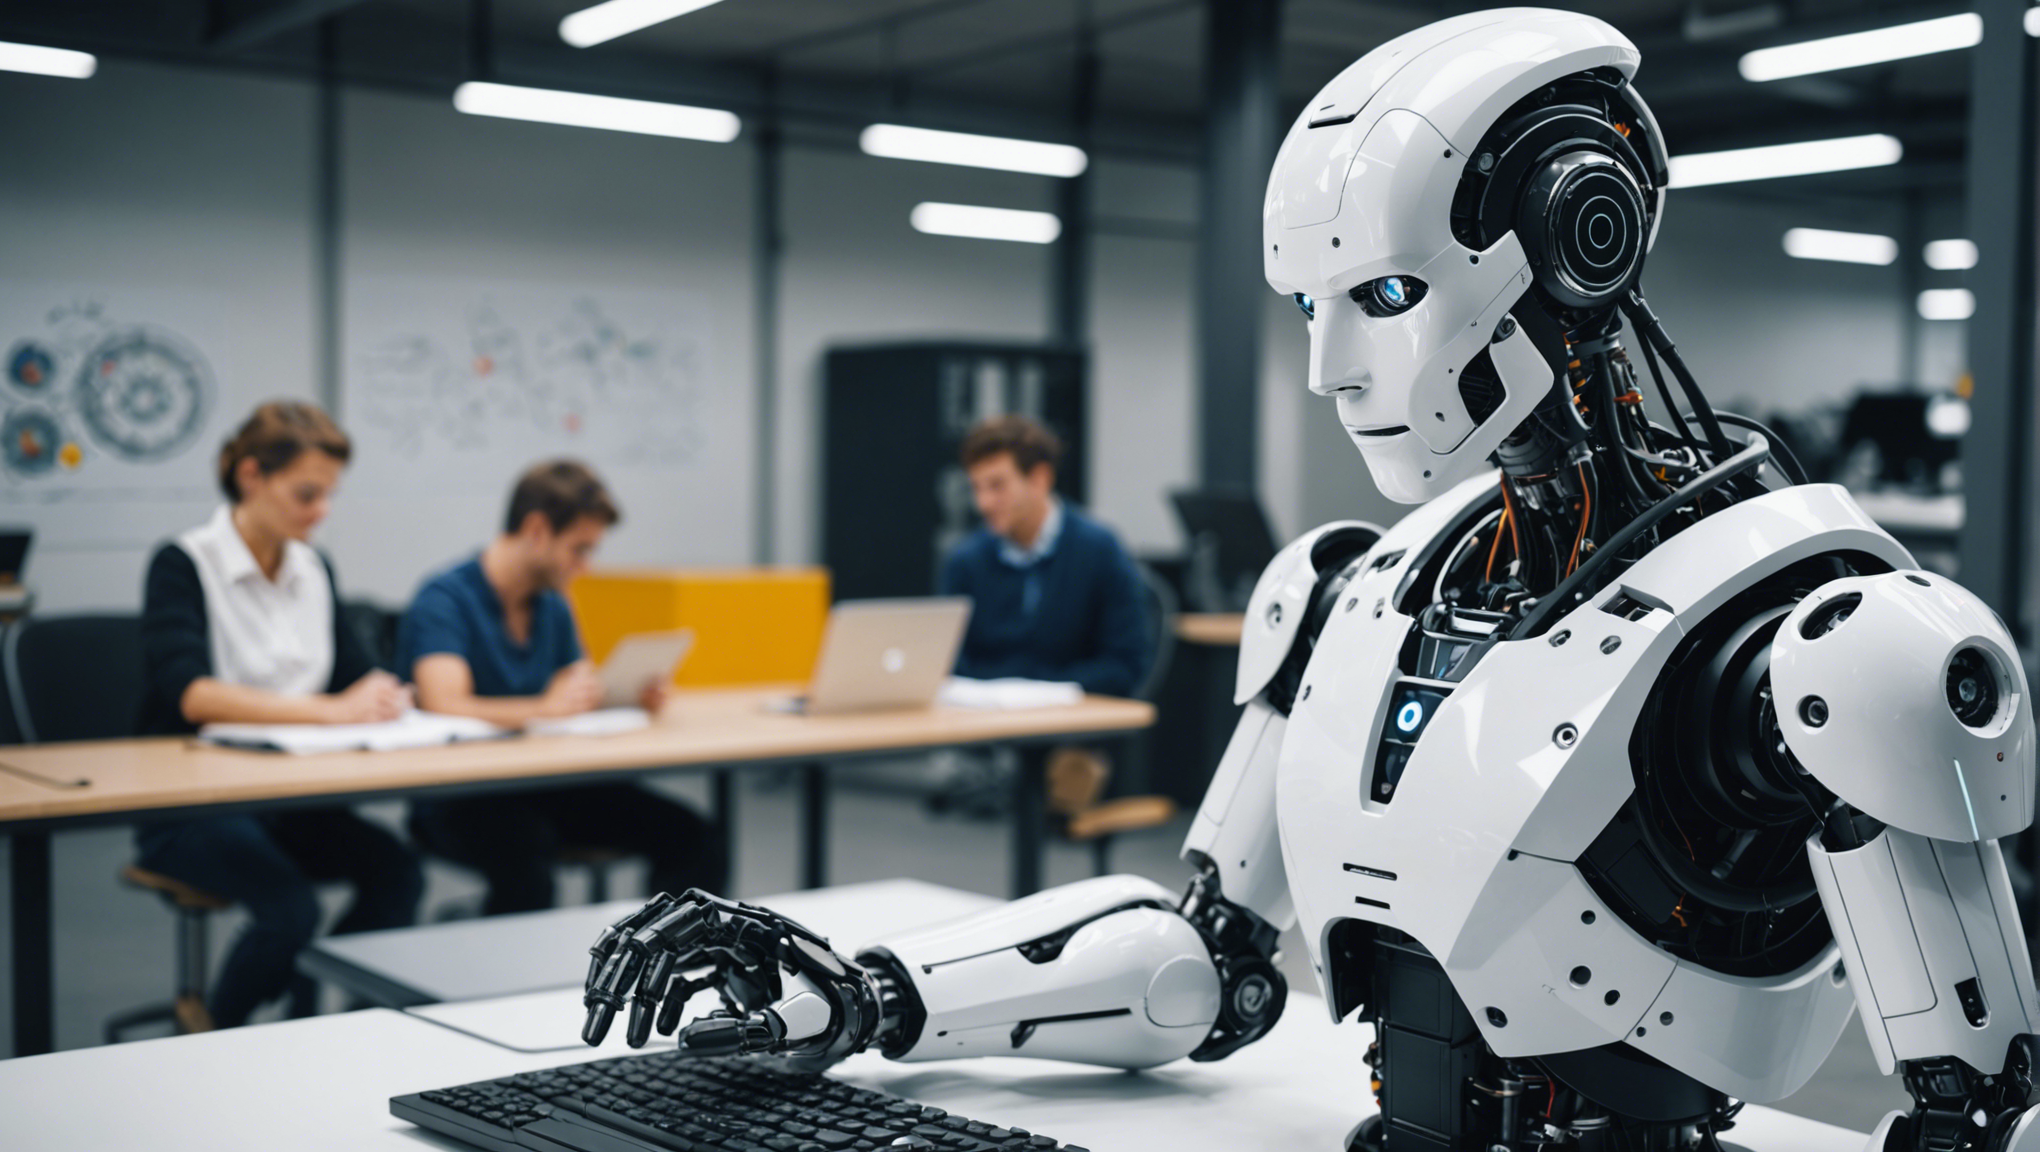 découvrez les cours en ligne sur la robotique et l'intelligence artificielle pour acquérir des compétences dans ces domaines en plein essor.